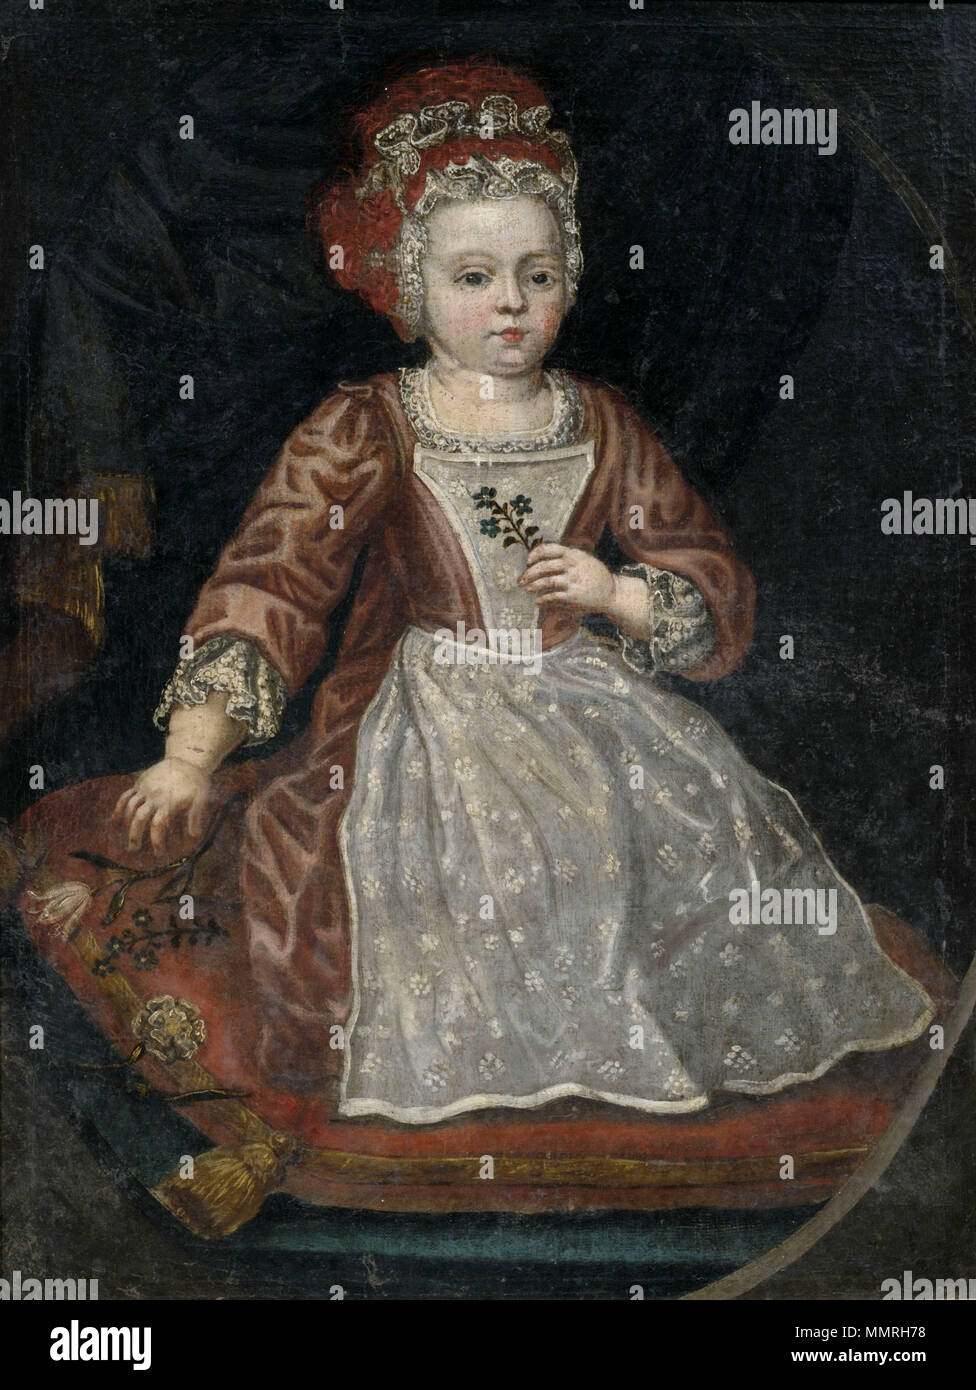 Bildnis eines kleinen Mädchens Kleid mit rotem dans weißer Schürze Jh 18 Banque D'Images